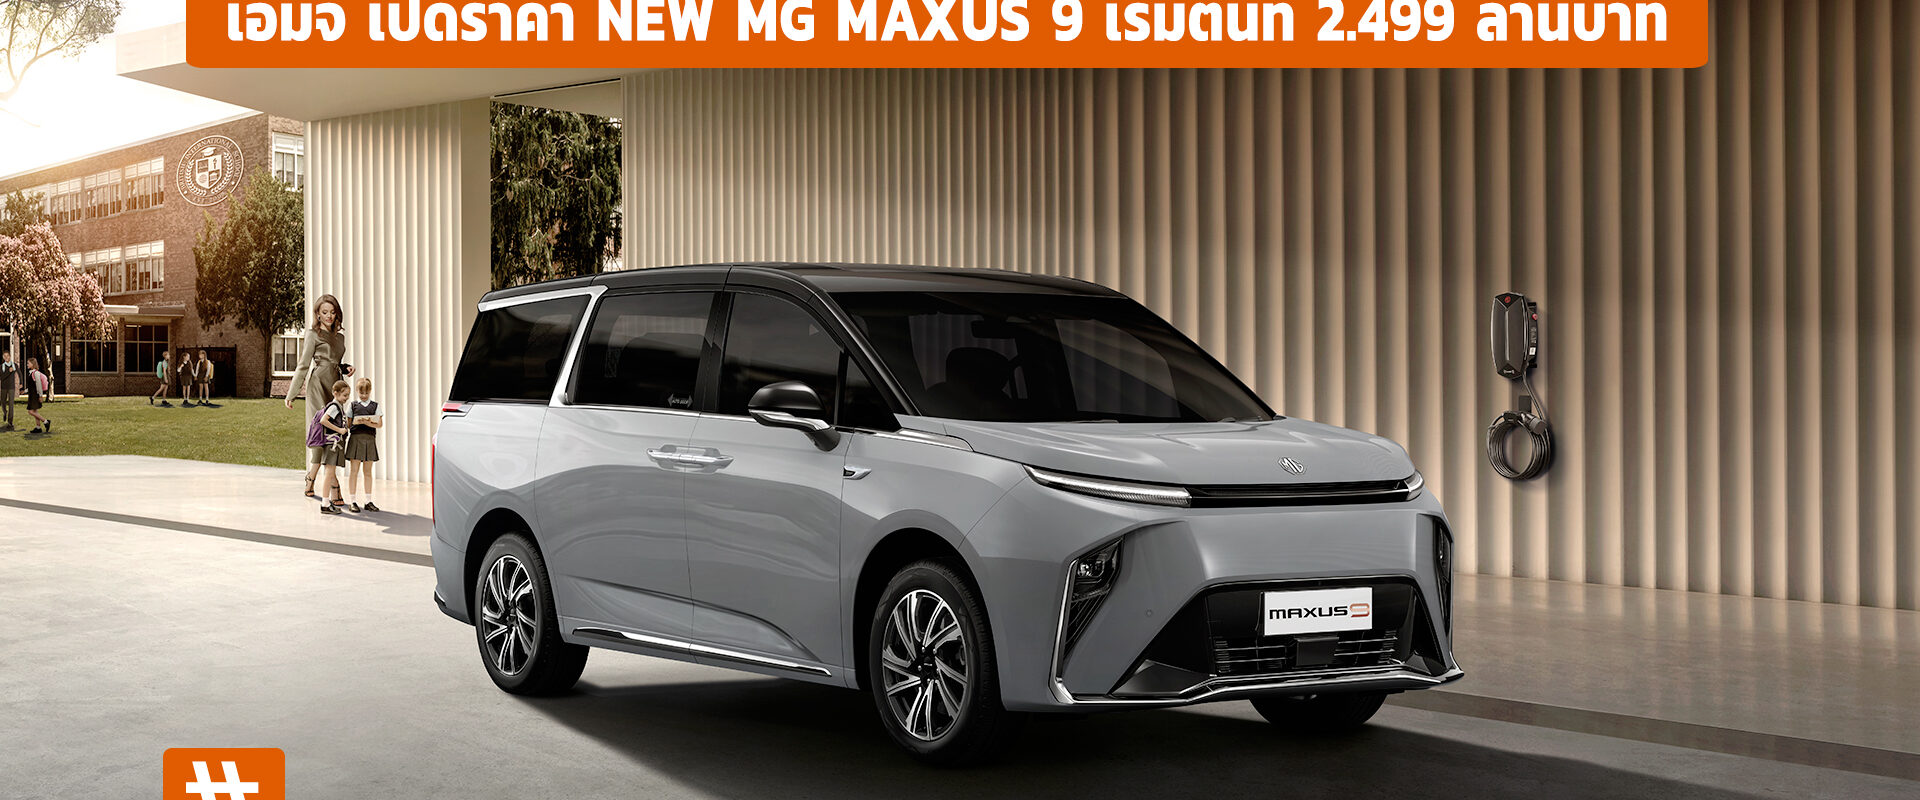 เอ็มจี เปิดราคา NEW MG MAXUS 9 เริ่มต้นที่ 2.499 ล้านบาท